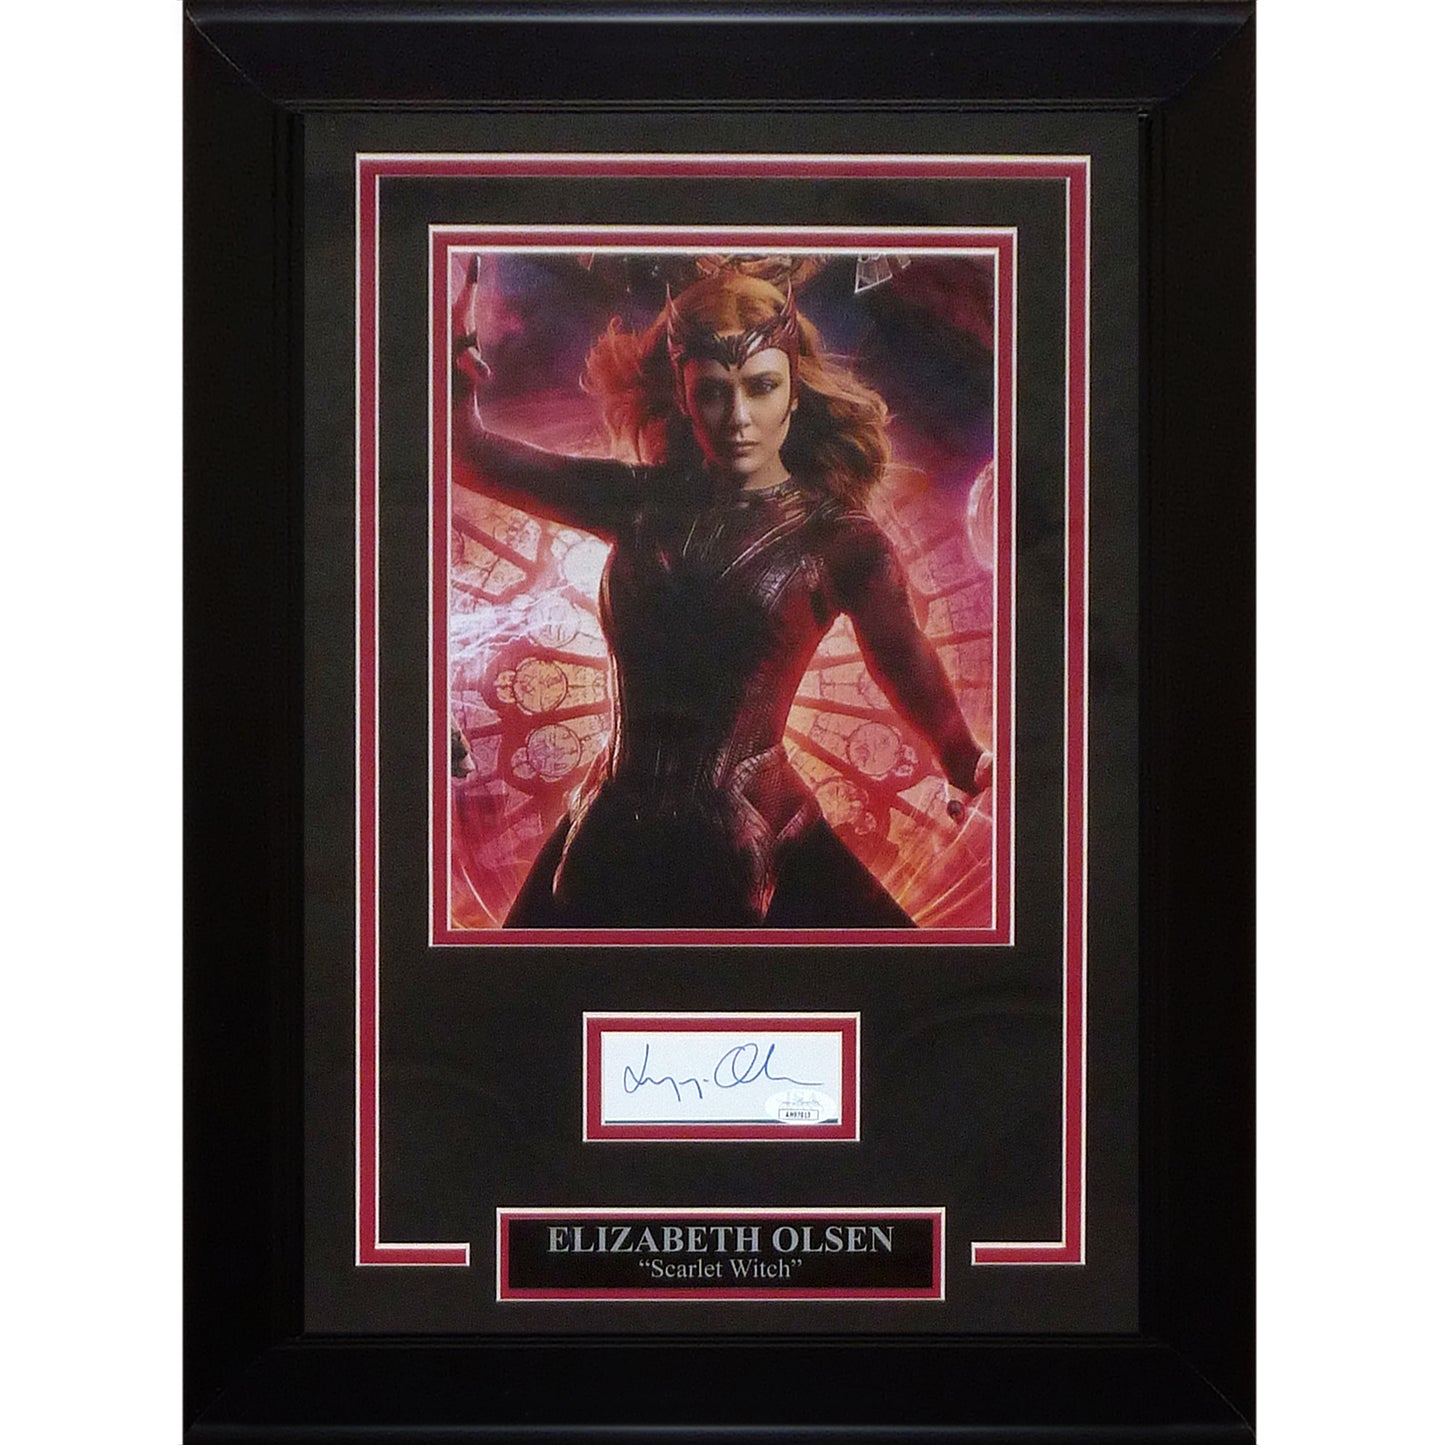 Elizabeth Olsen AKA Scarlet Witch Autographed Marvel "Signature Series" Frame - JSA